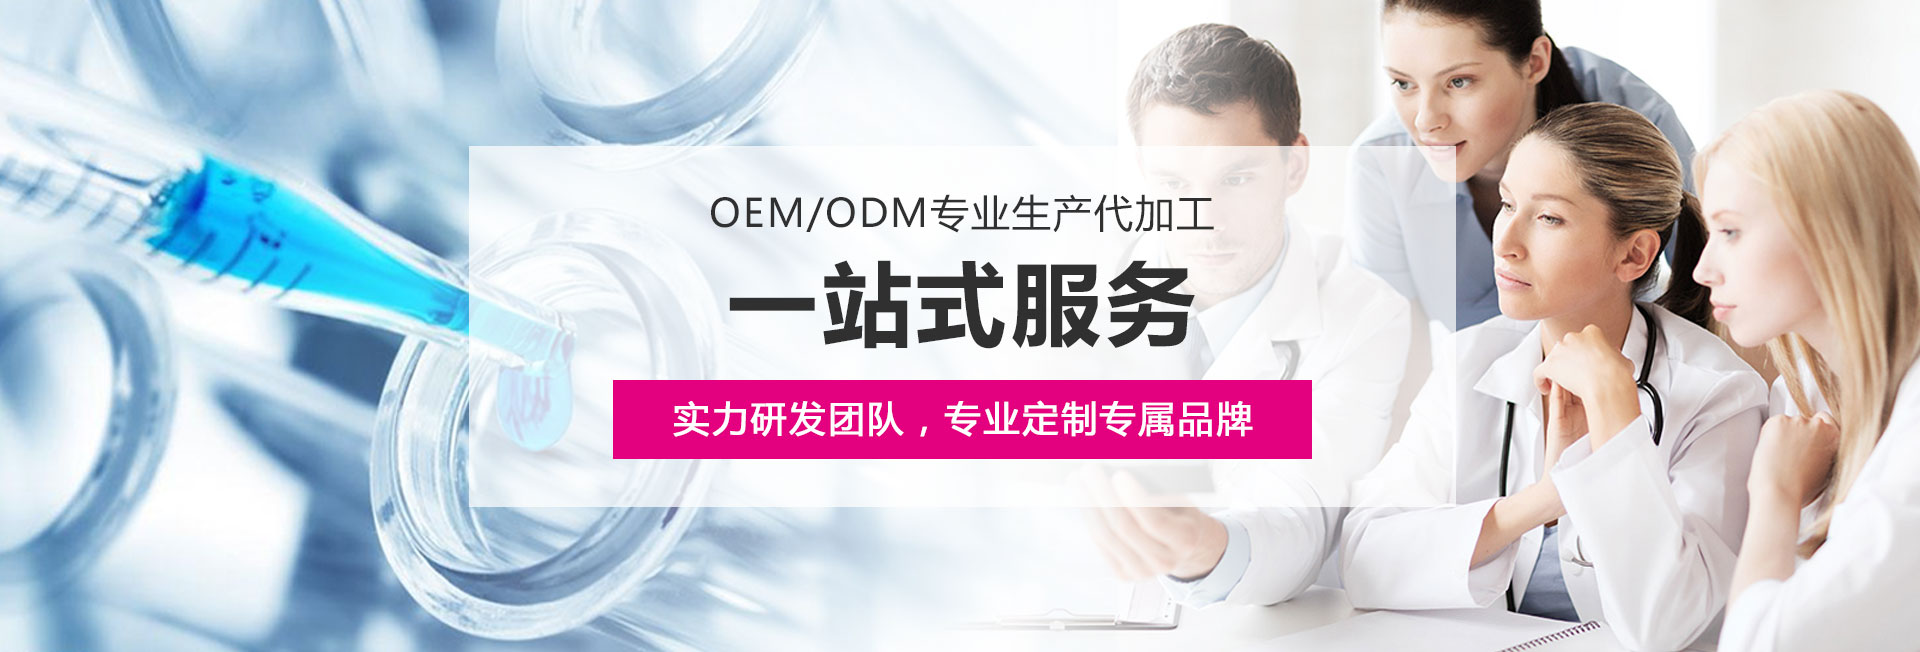 OEM/ODM一站式加工服务